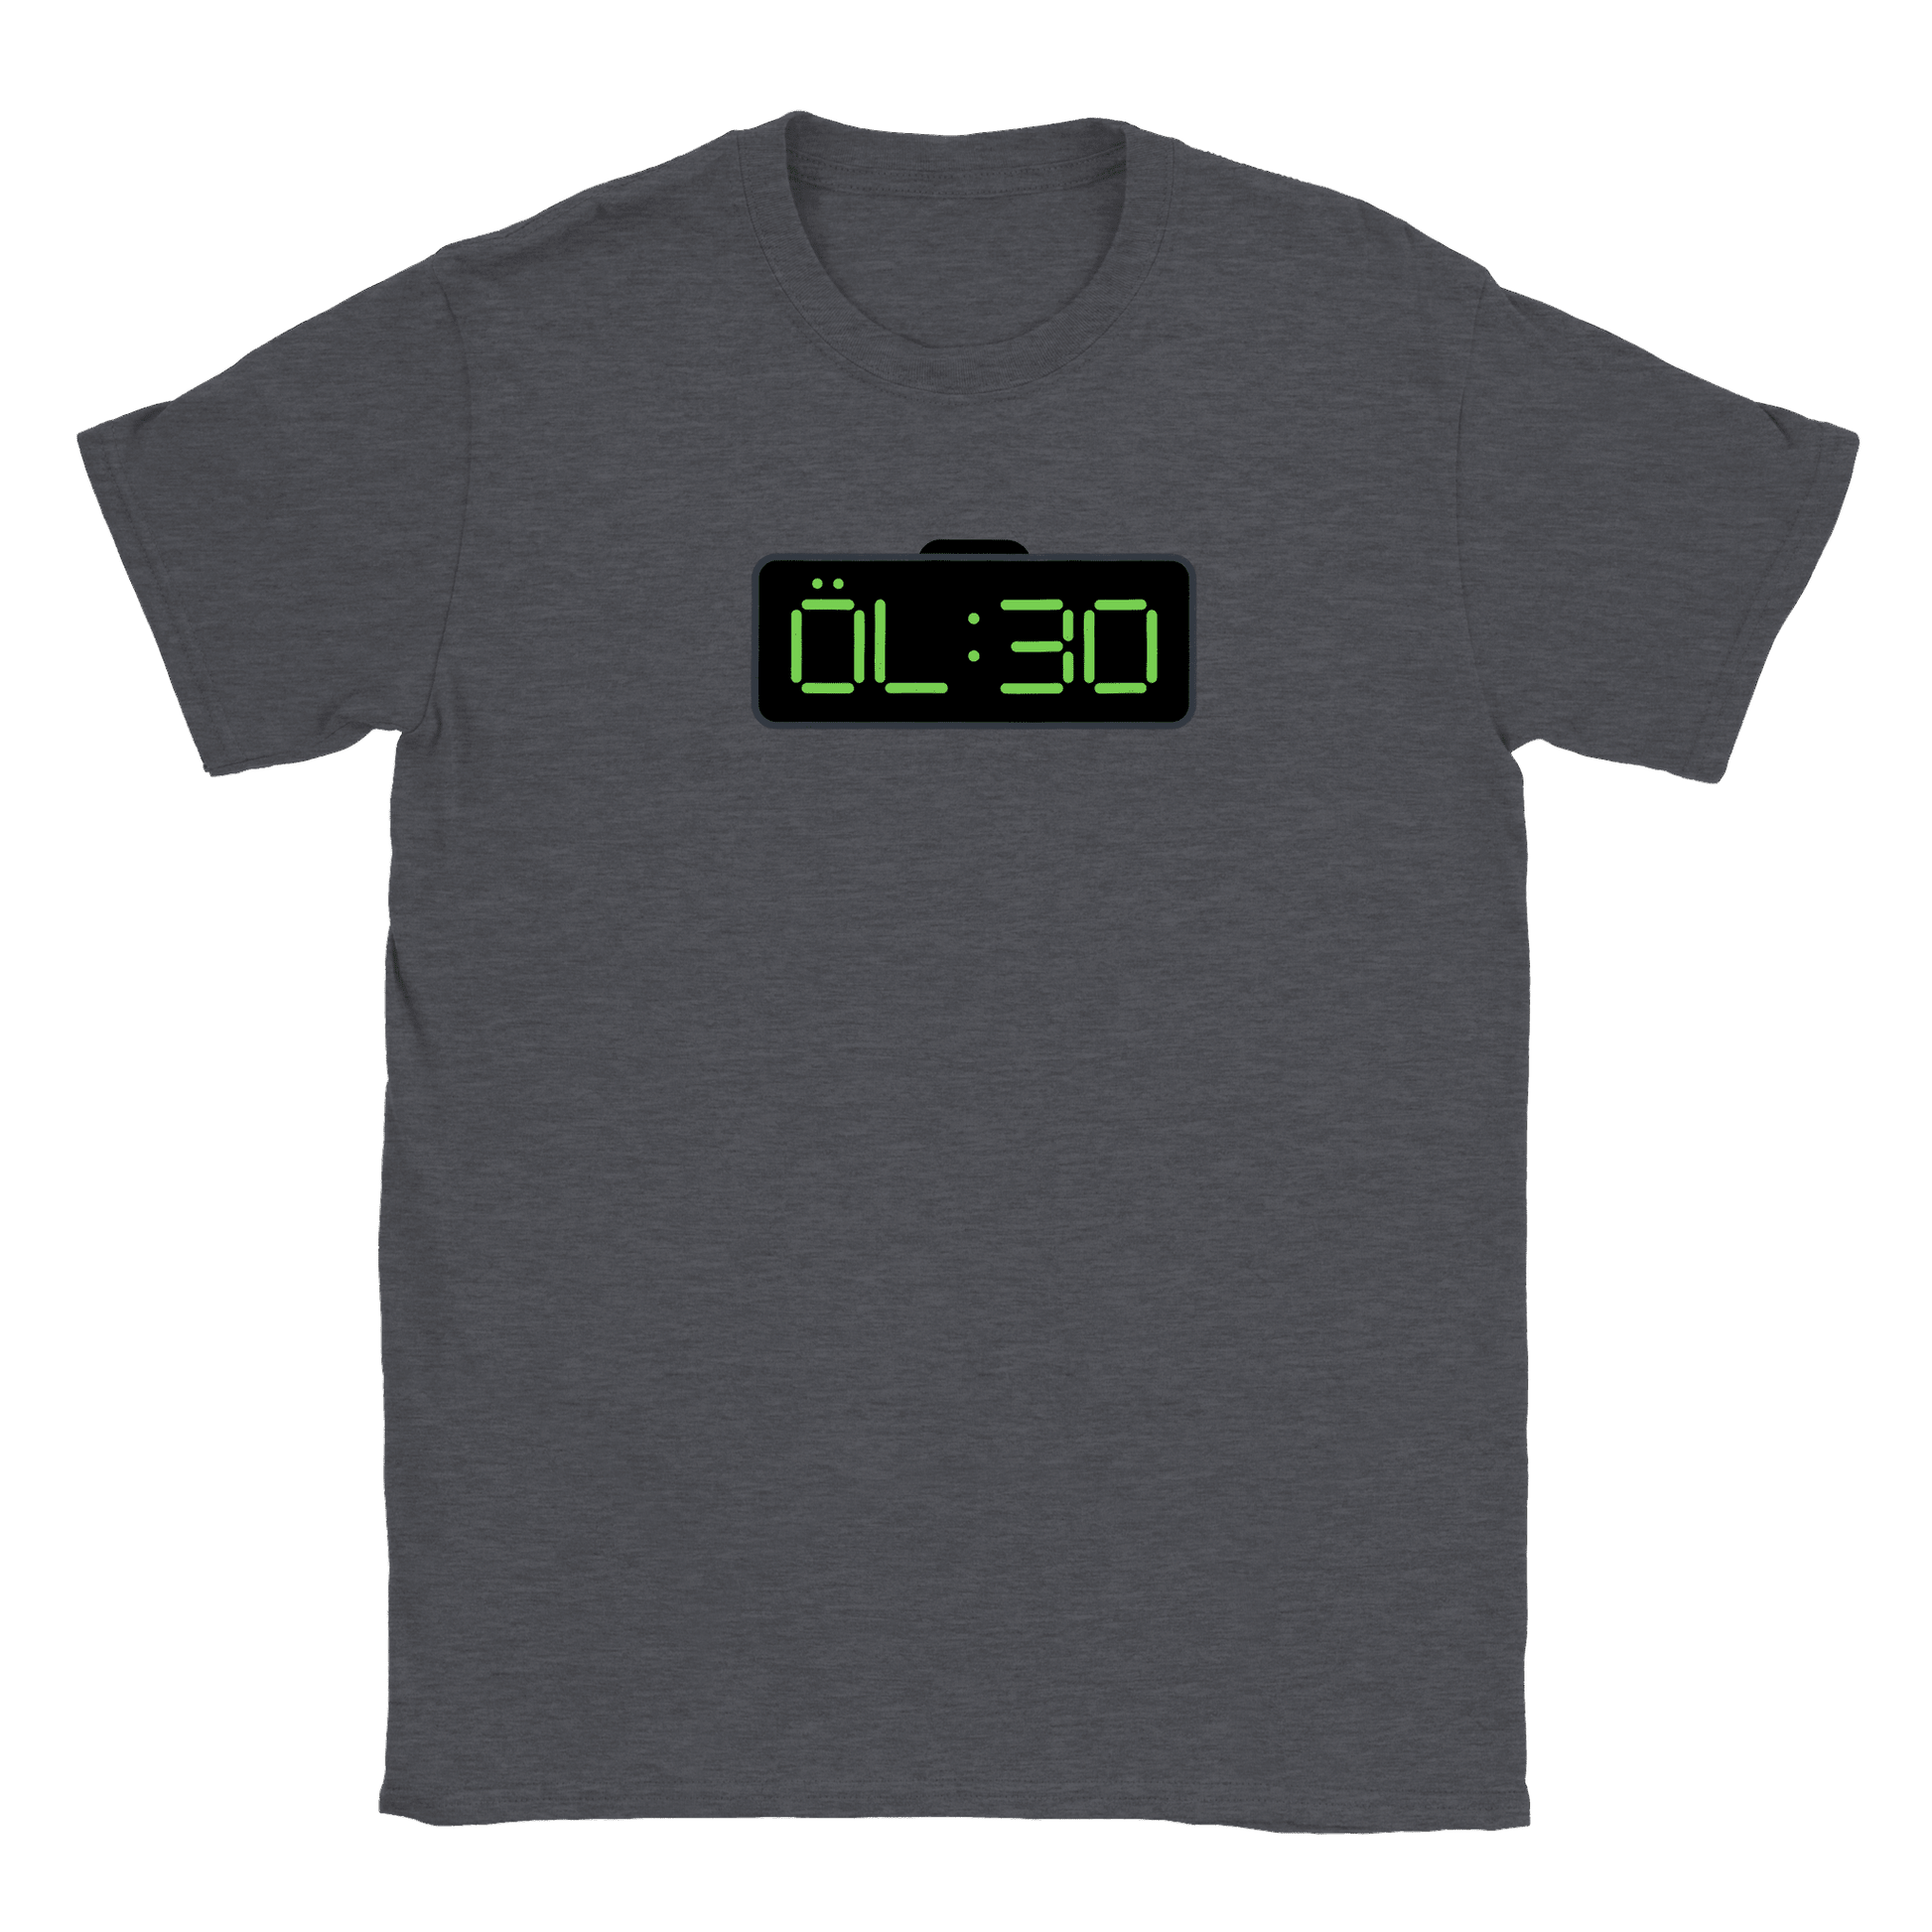 ÖL 30 - T-shirt Mörk Ljung